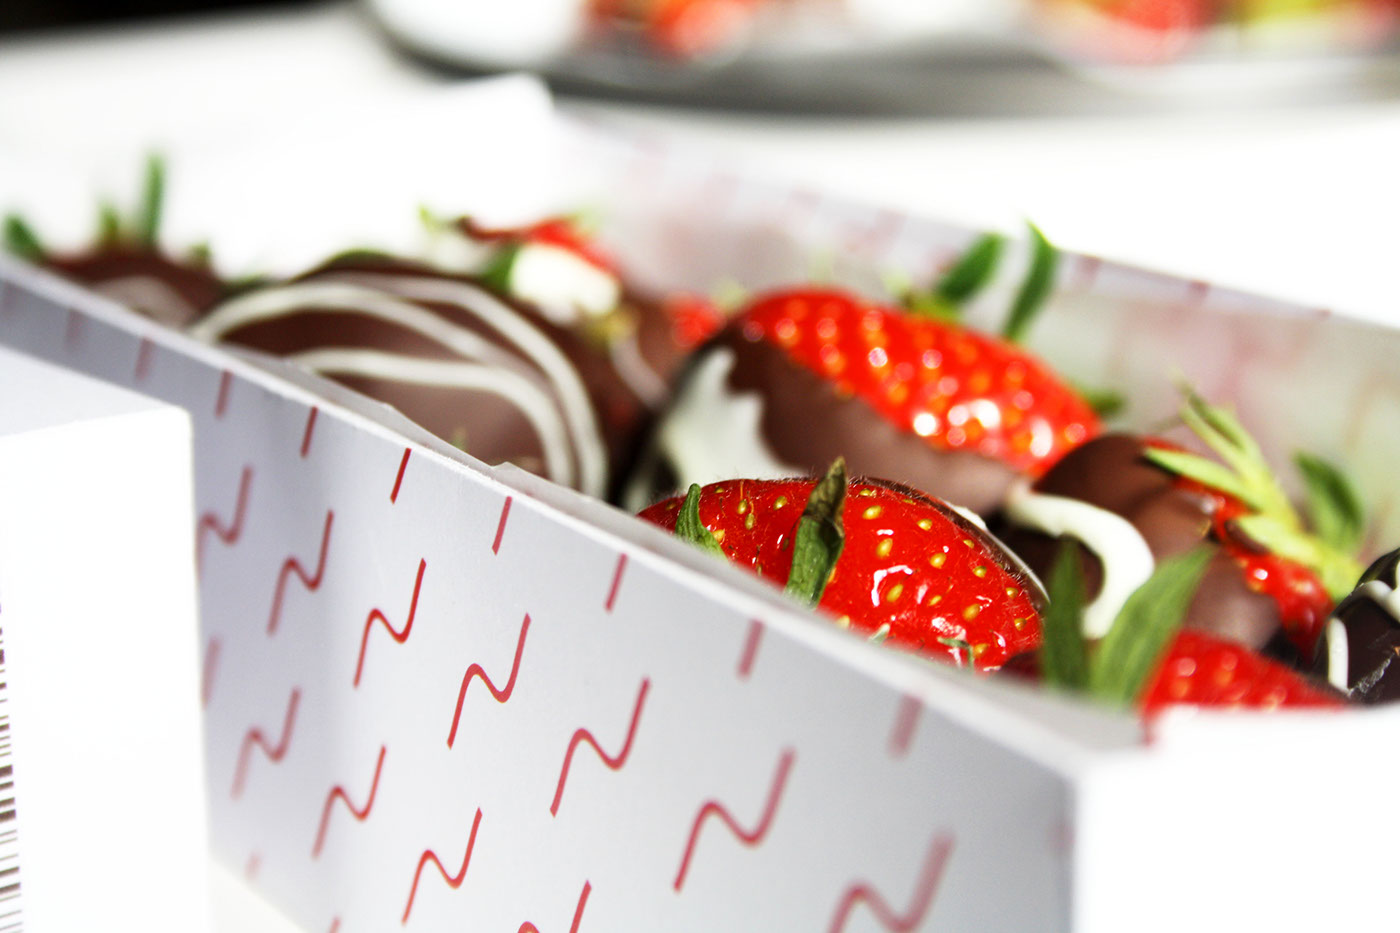 brand exam handcraft graphic Minimalism nkh Food  chocolate strawberries pattern